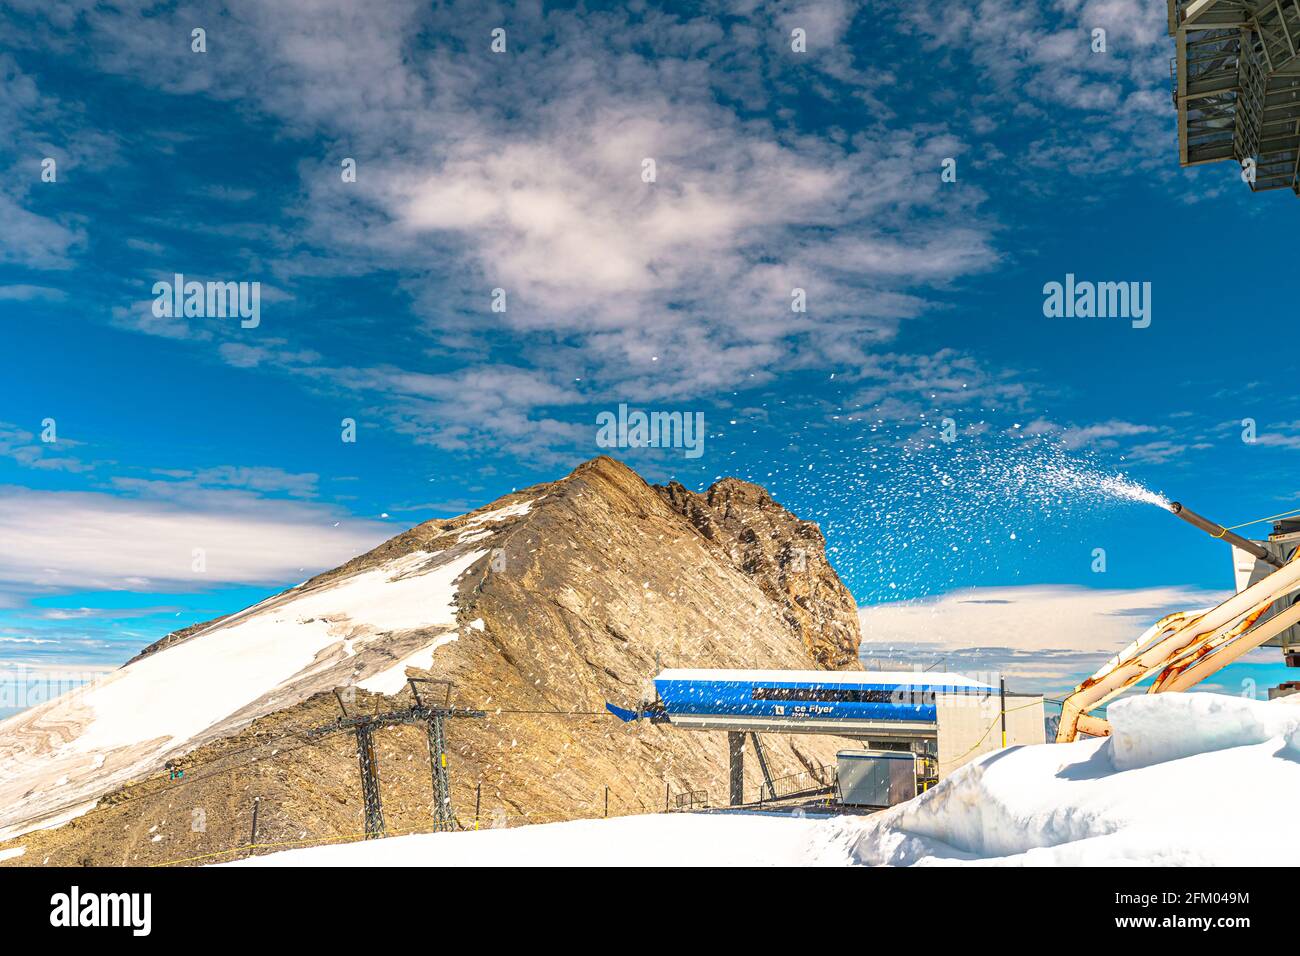 Titlis, Engelberg, Suisse - août 27,2020: Station de Ice-Flyer télésiège du Titlis pic de montagne des alpes Uri à 3040 M. Situé dans des cantons de Banque D'Images